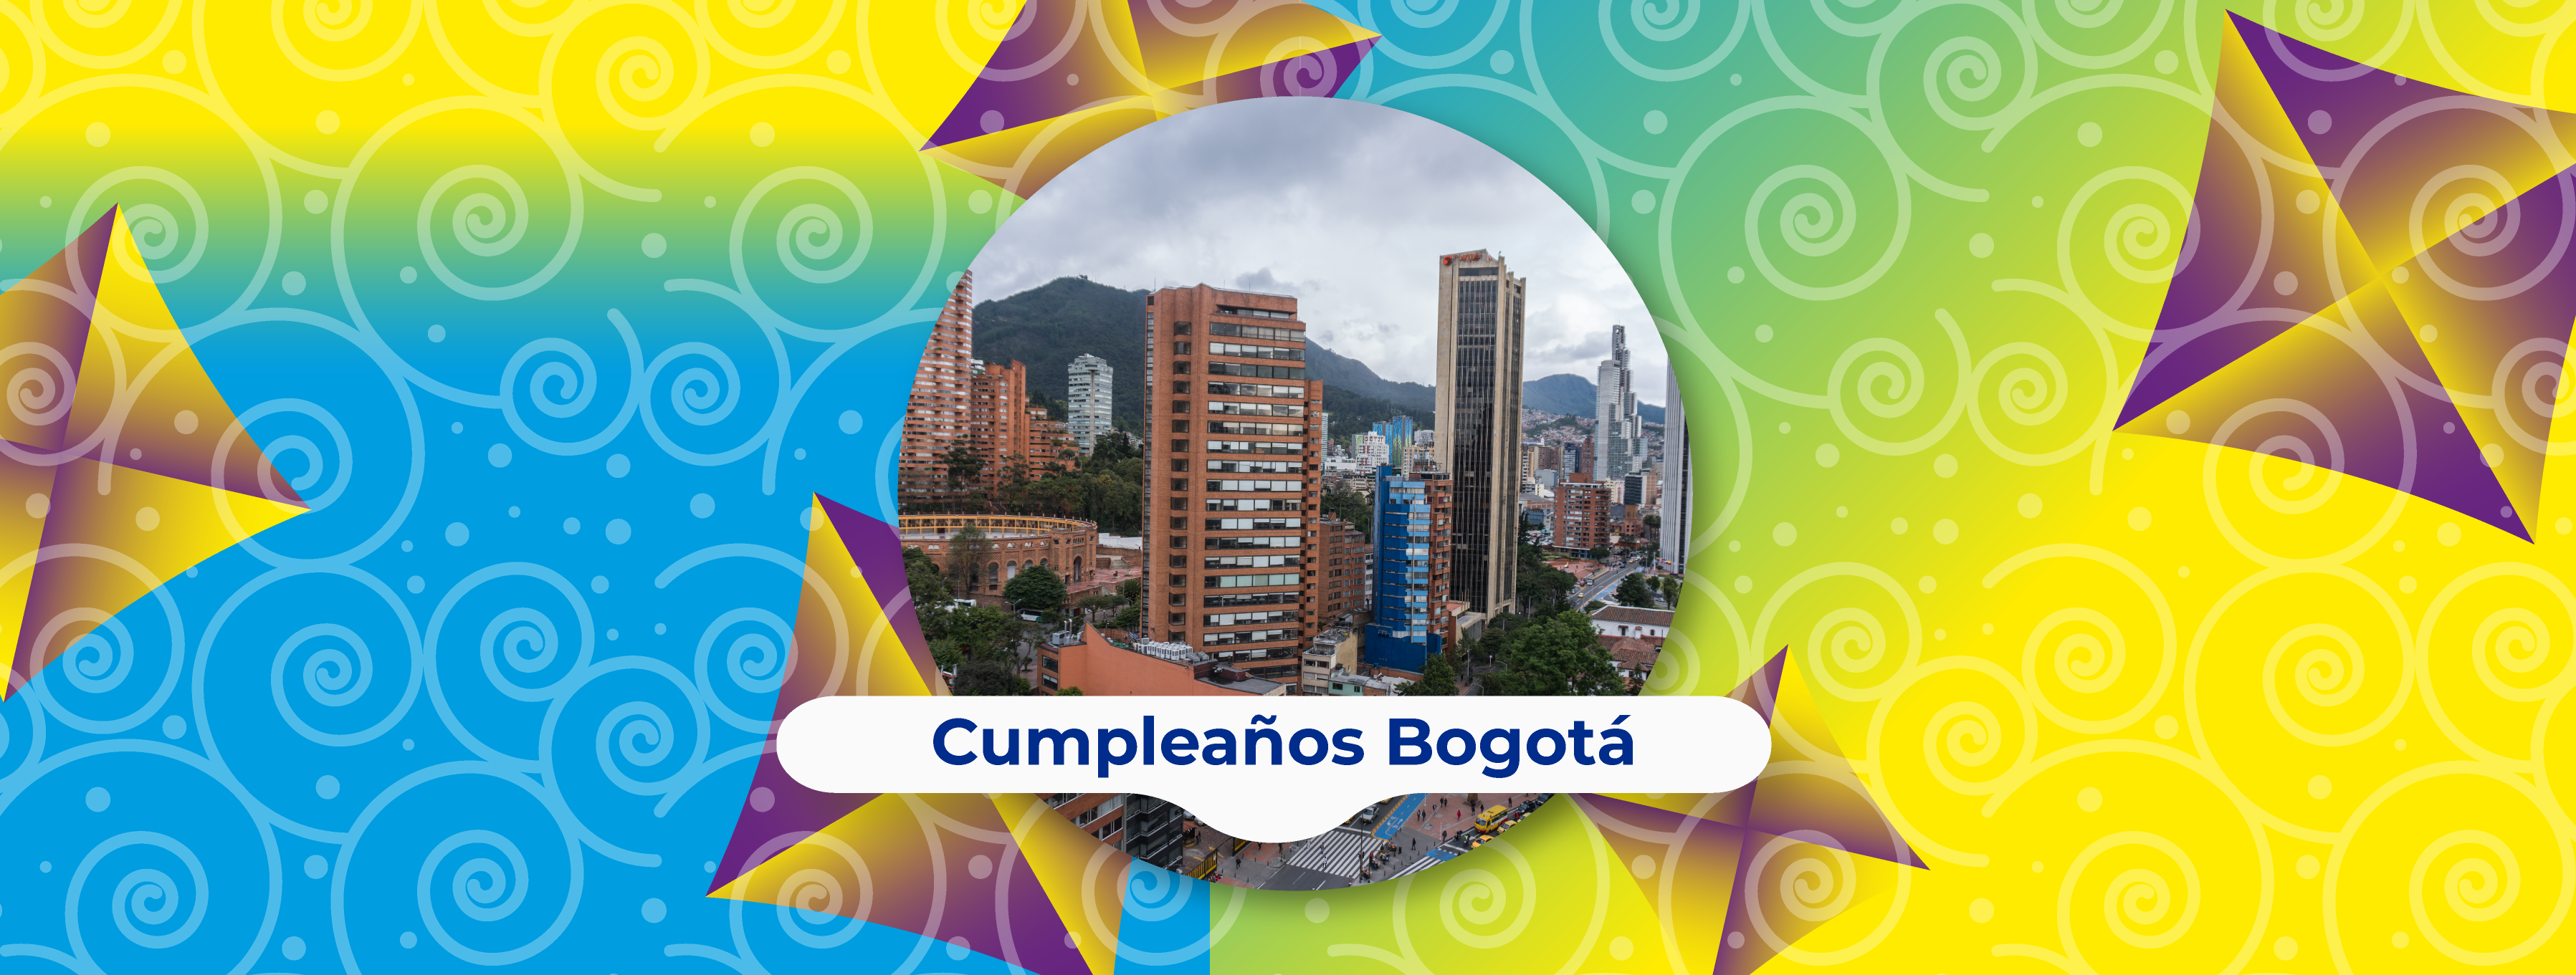 Cumpleaños Bogotá